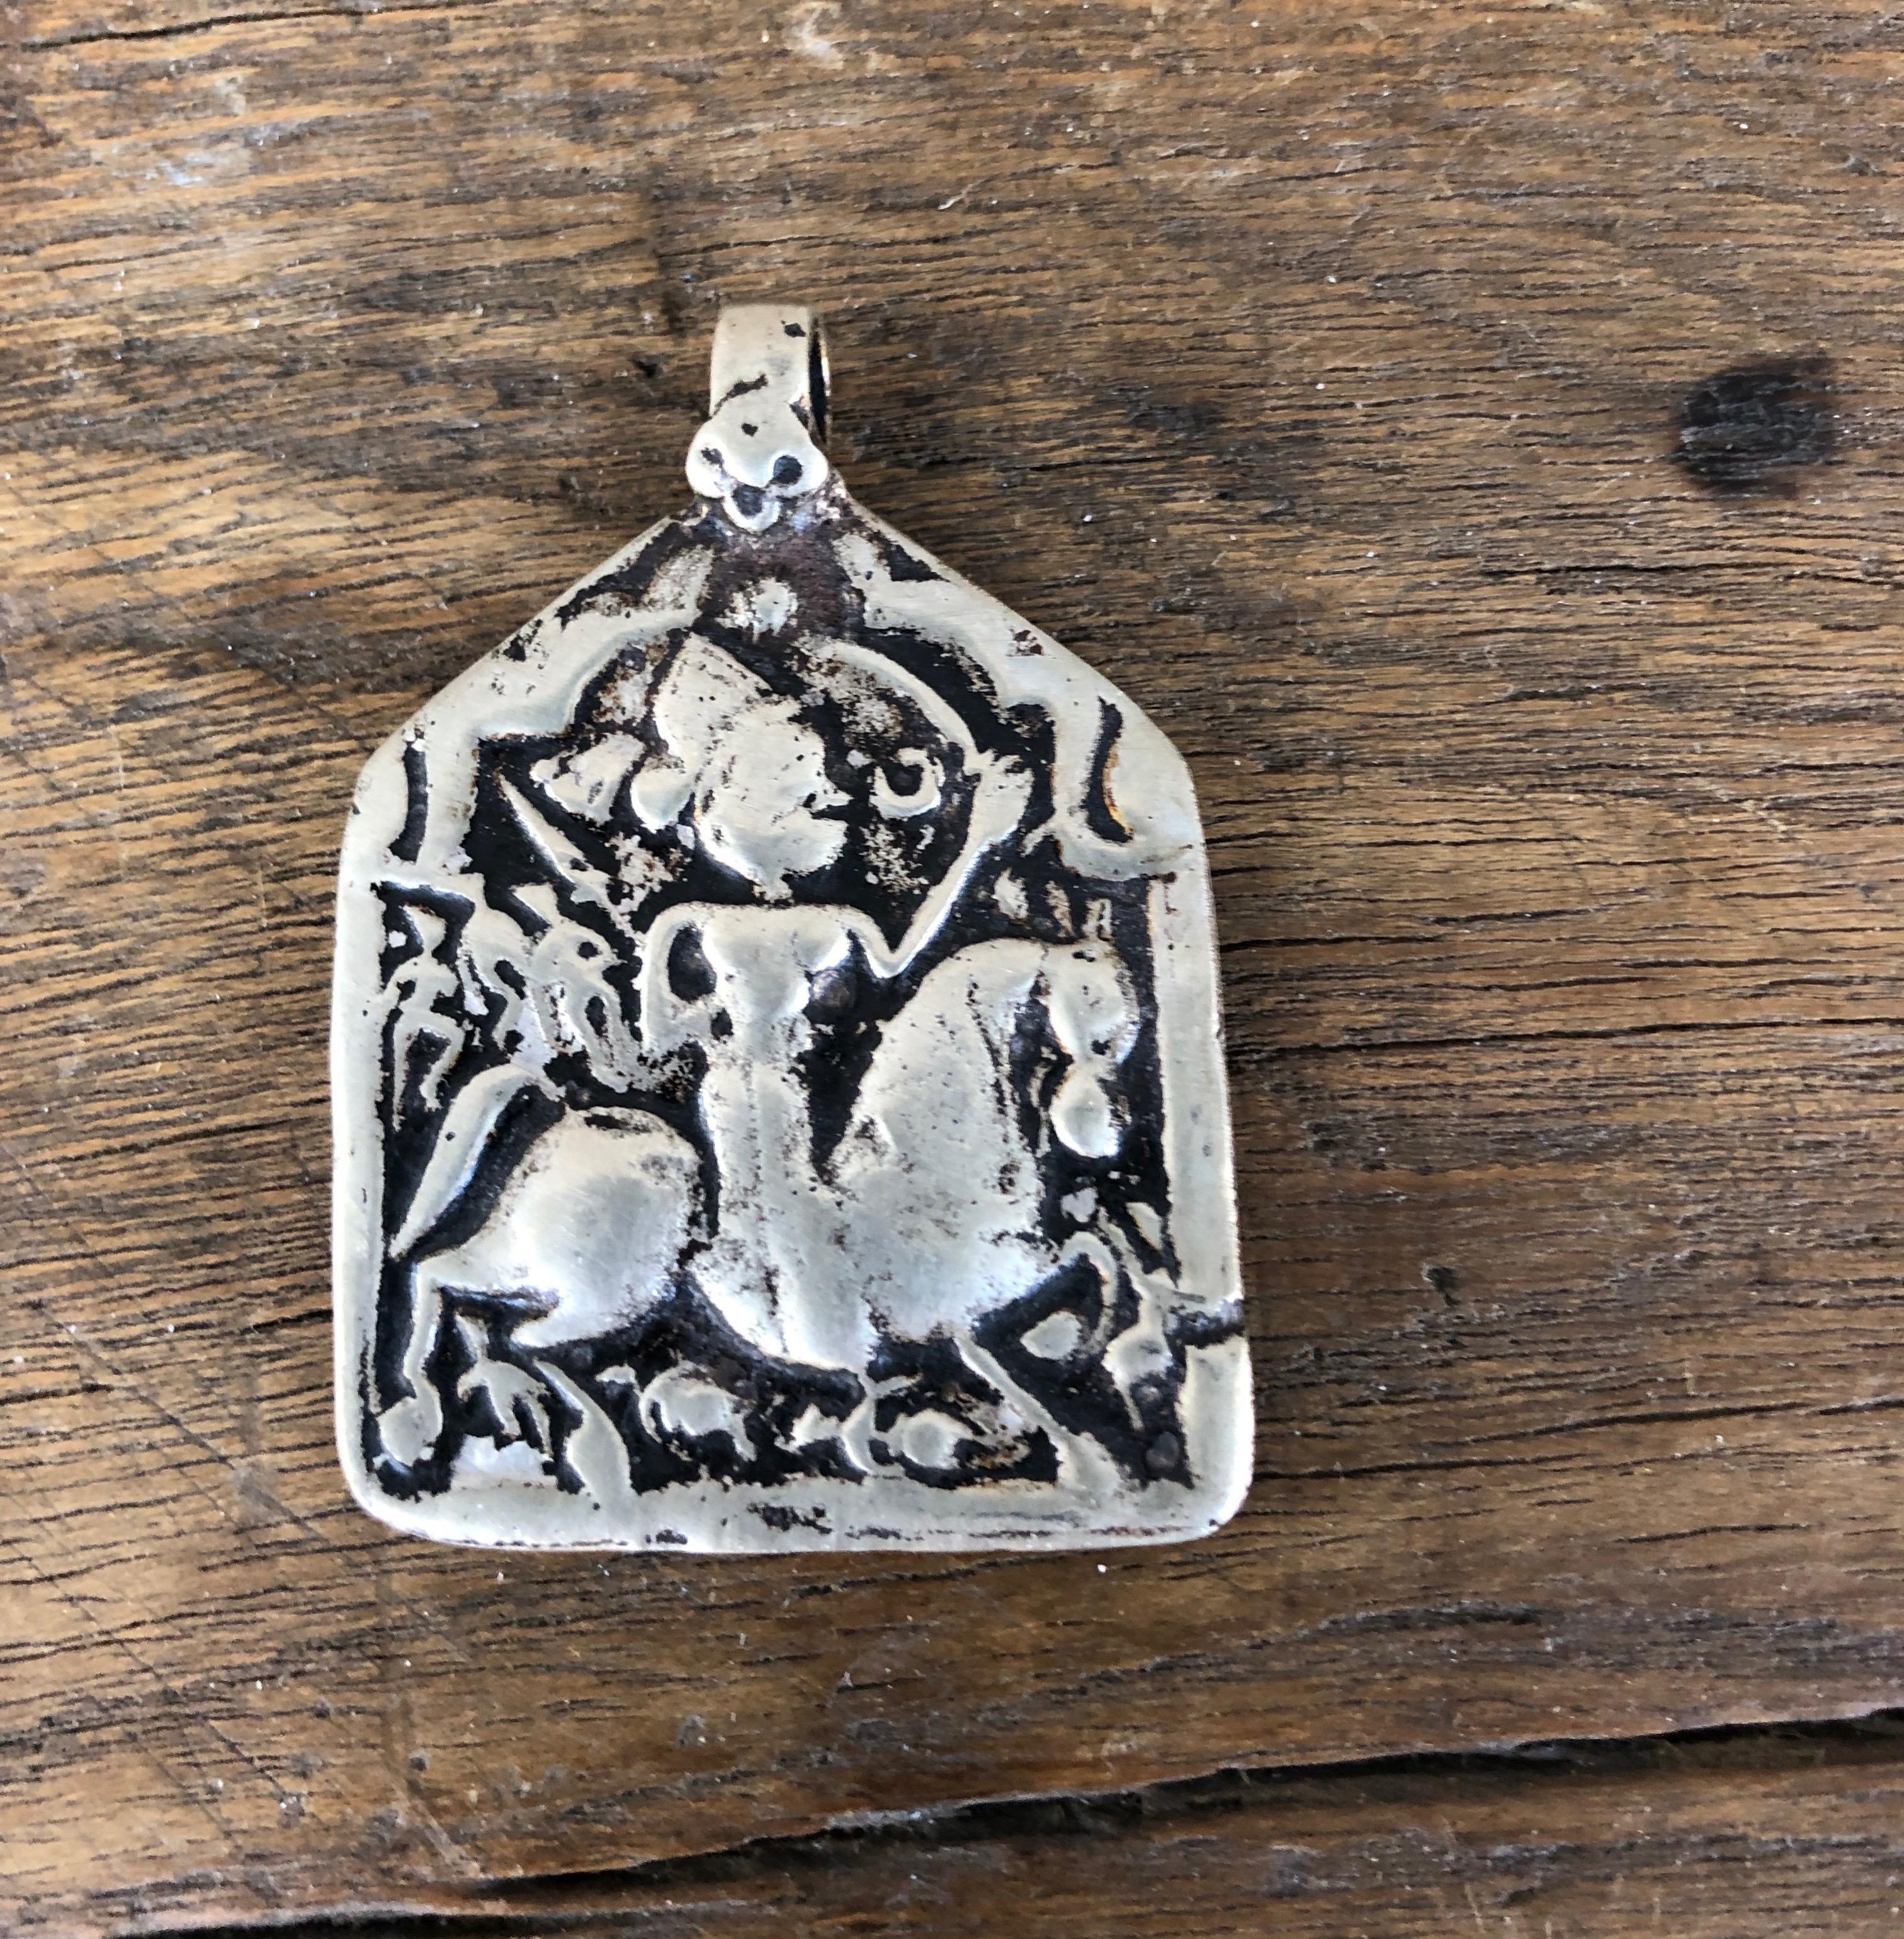 Ein atemberaubendes und seltenes Amulett aus dem 19. Jahrhundert mit der detaillierten Darstellung eines Mannes auf einem Pferd in der Mitte. Dieses aus Indien stammende Stück verrät sein Alter und seine Geschichte durch die herrliche Patina, die